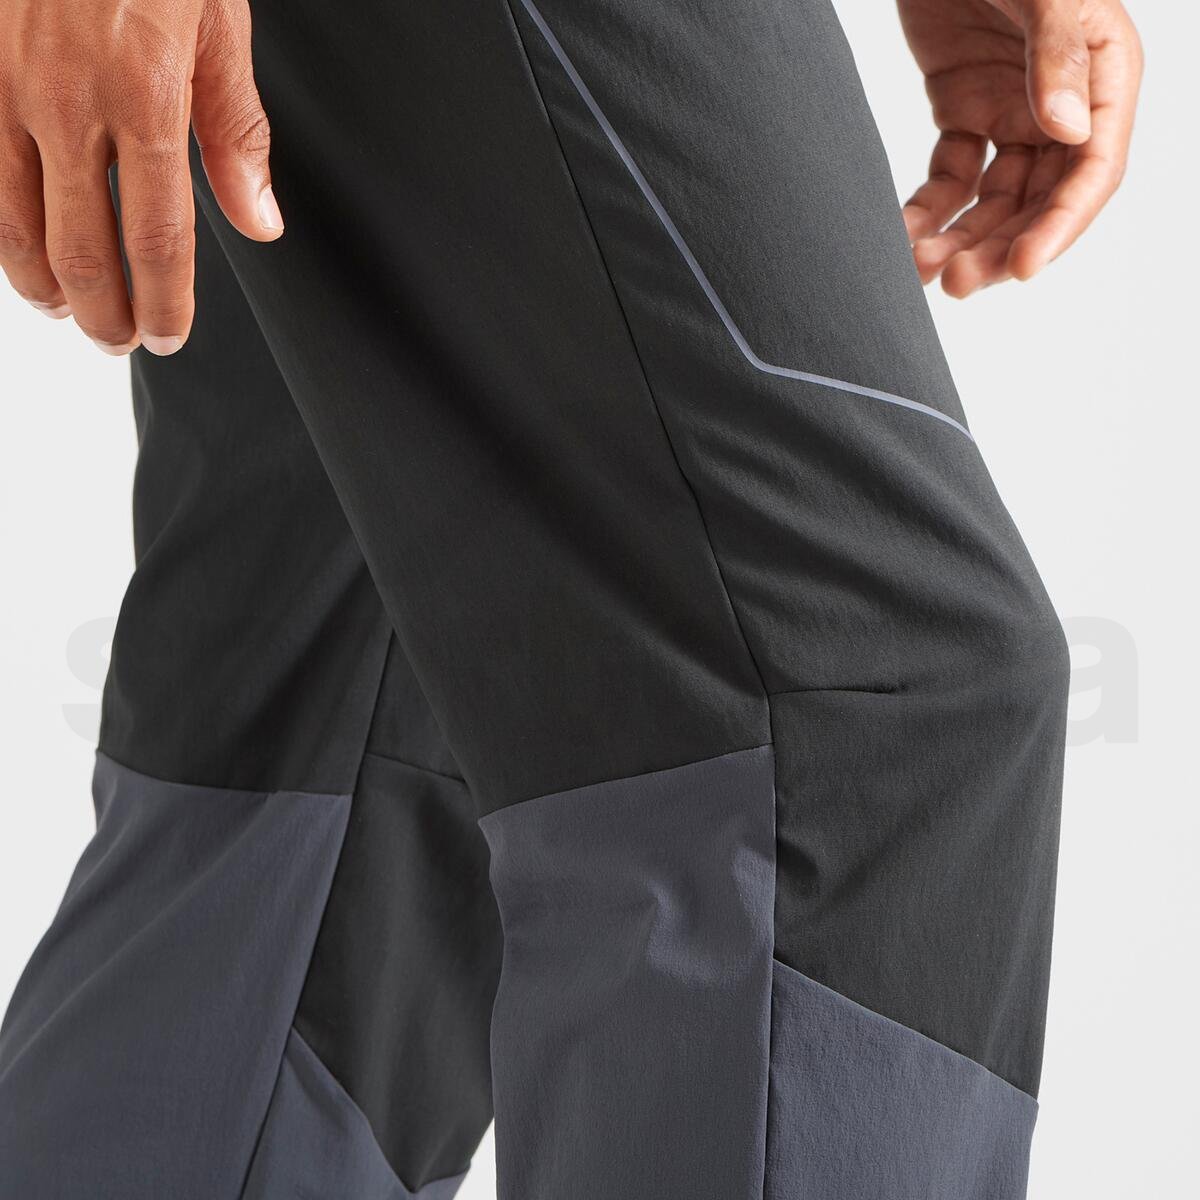 Kalhoty Salomon WAYFARER SECURE M - šedá/černá (prodloužená délka)